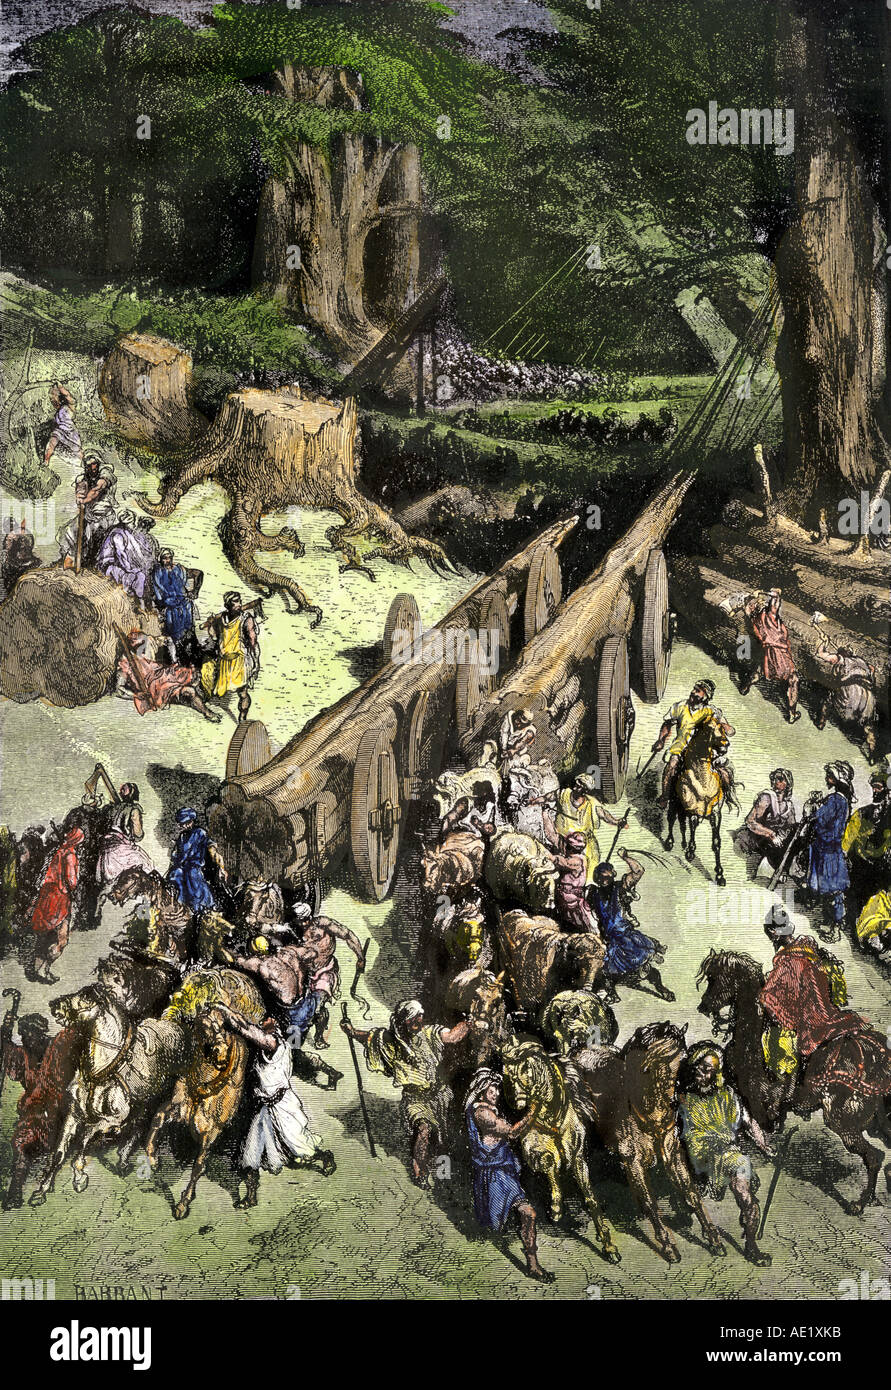 Hiram roi de Tyr rassemble les hommes pour aider les Israélites couper du bois de cèdre pour reconstruire le temple de Salomon en Jersalem. À la main, gravure sur bois Banque D'Images